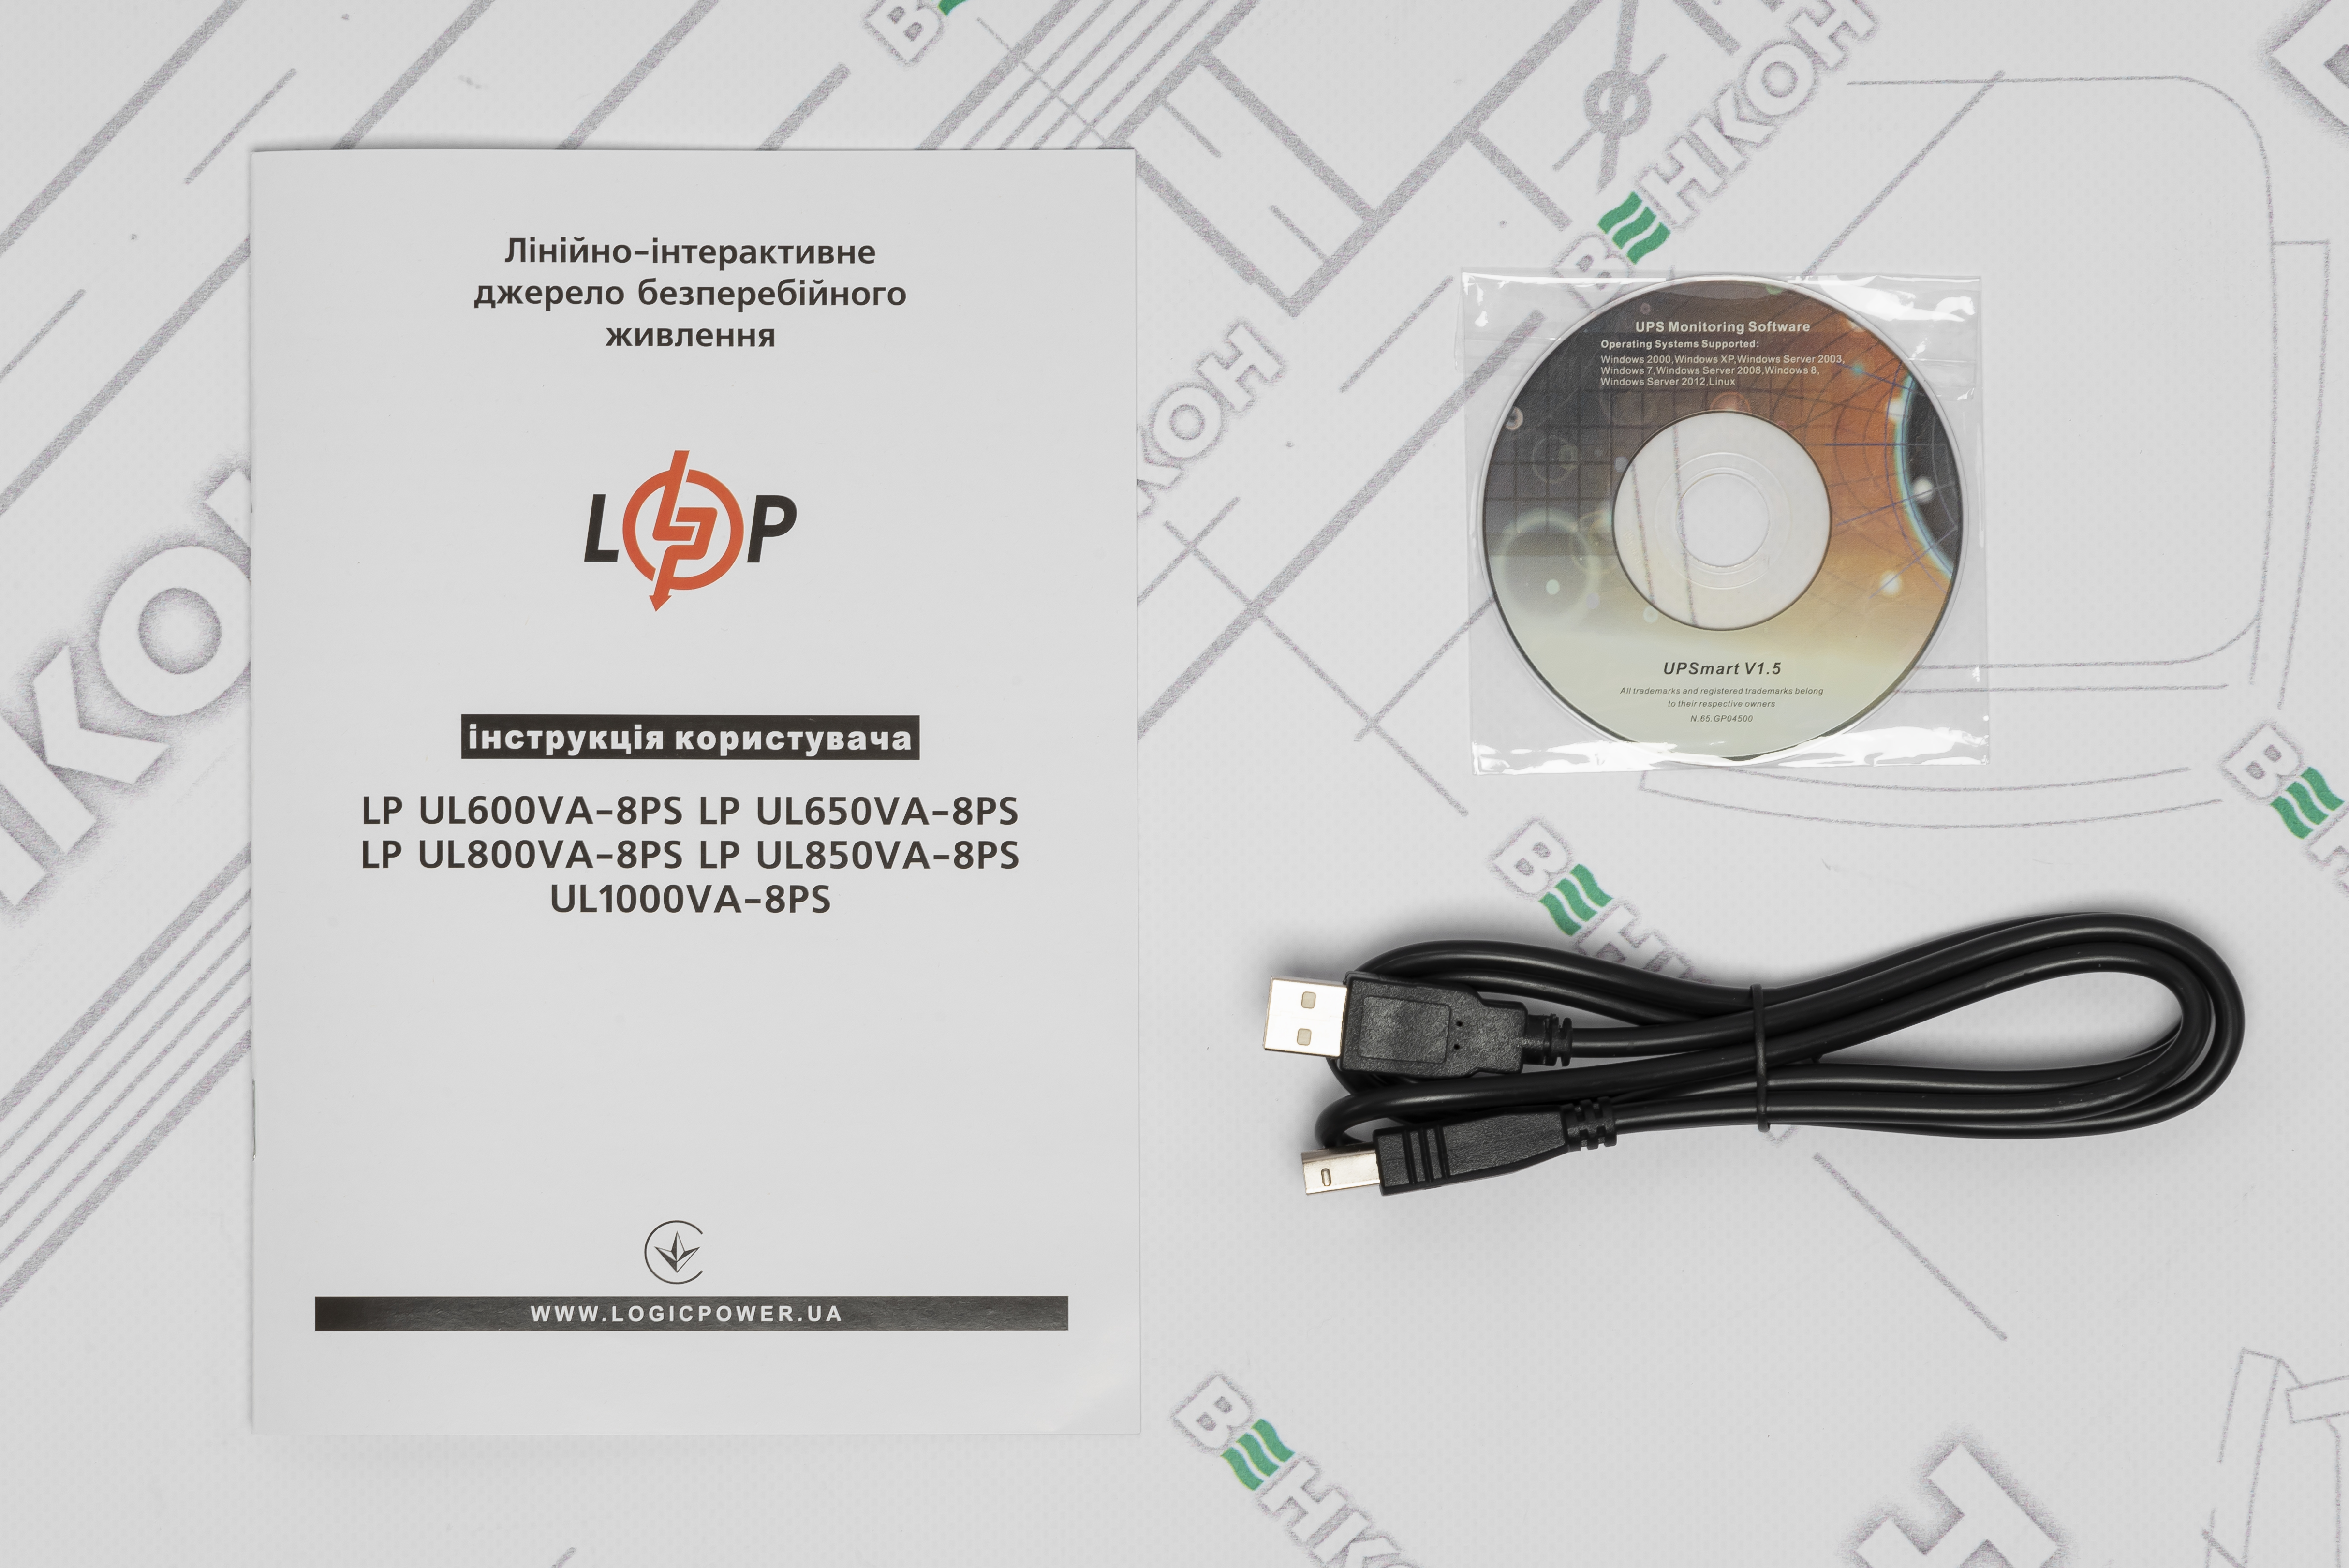 Джерело безперебійного живлення LogicPower UPS LP-UL1000VA-8PS (600Вт) (16162) характеристики - фотографія 7